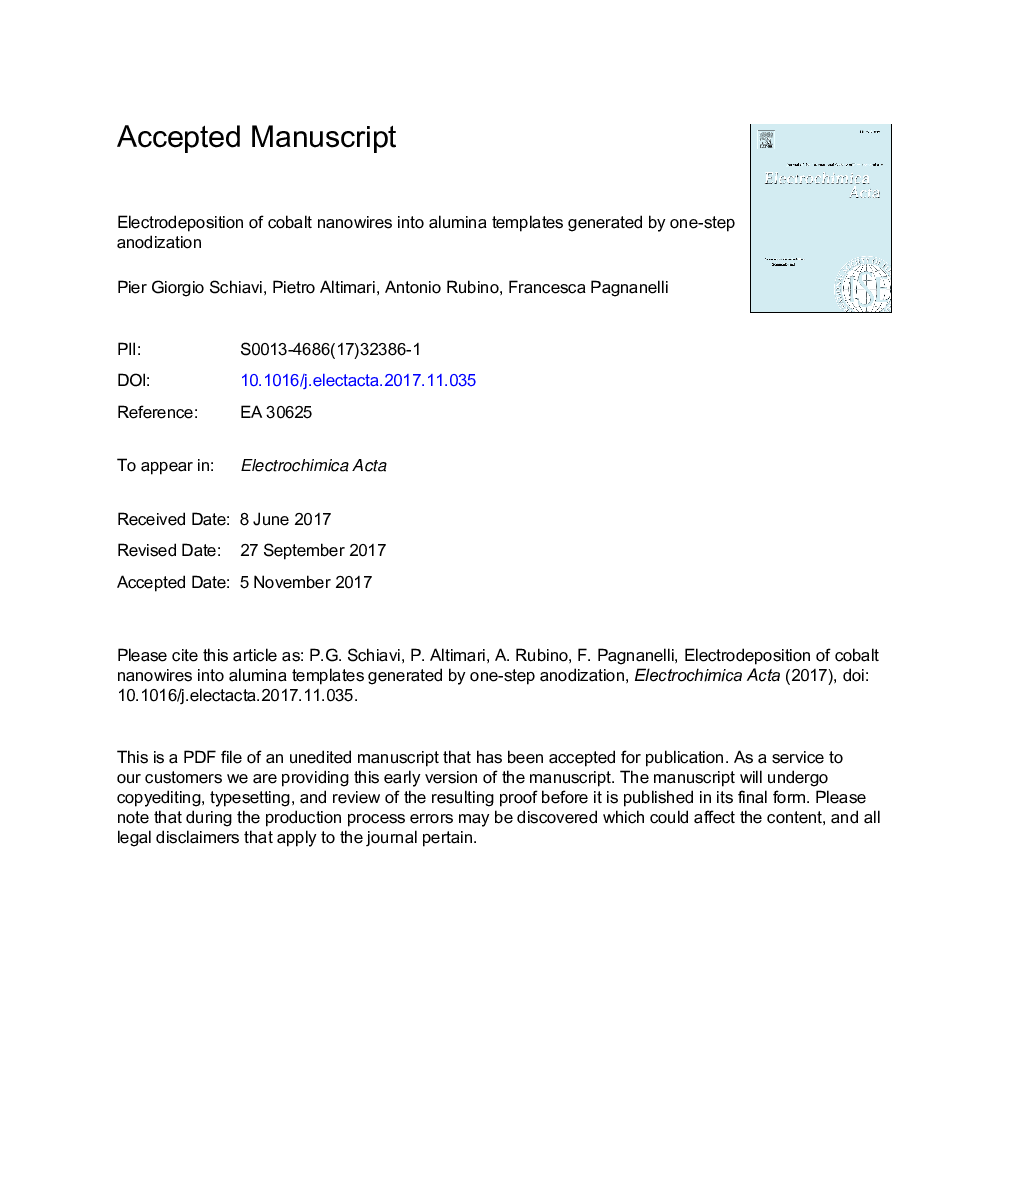 الکترواستفاده از نانوسیم های کبالت به المینیوم های تولید شده توسط آنودایز یک مرحله ای 